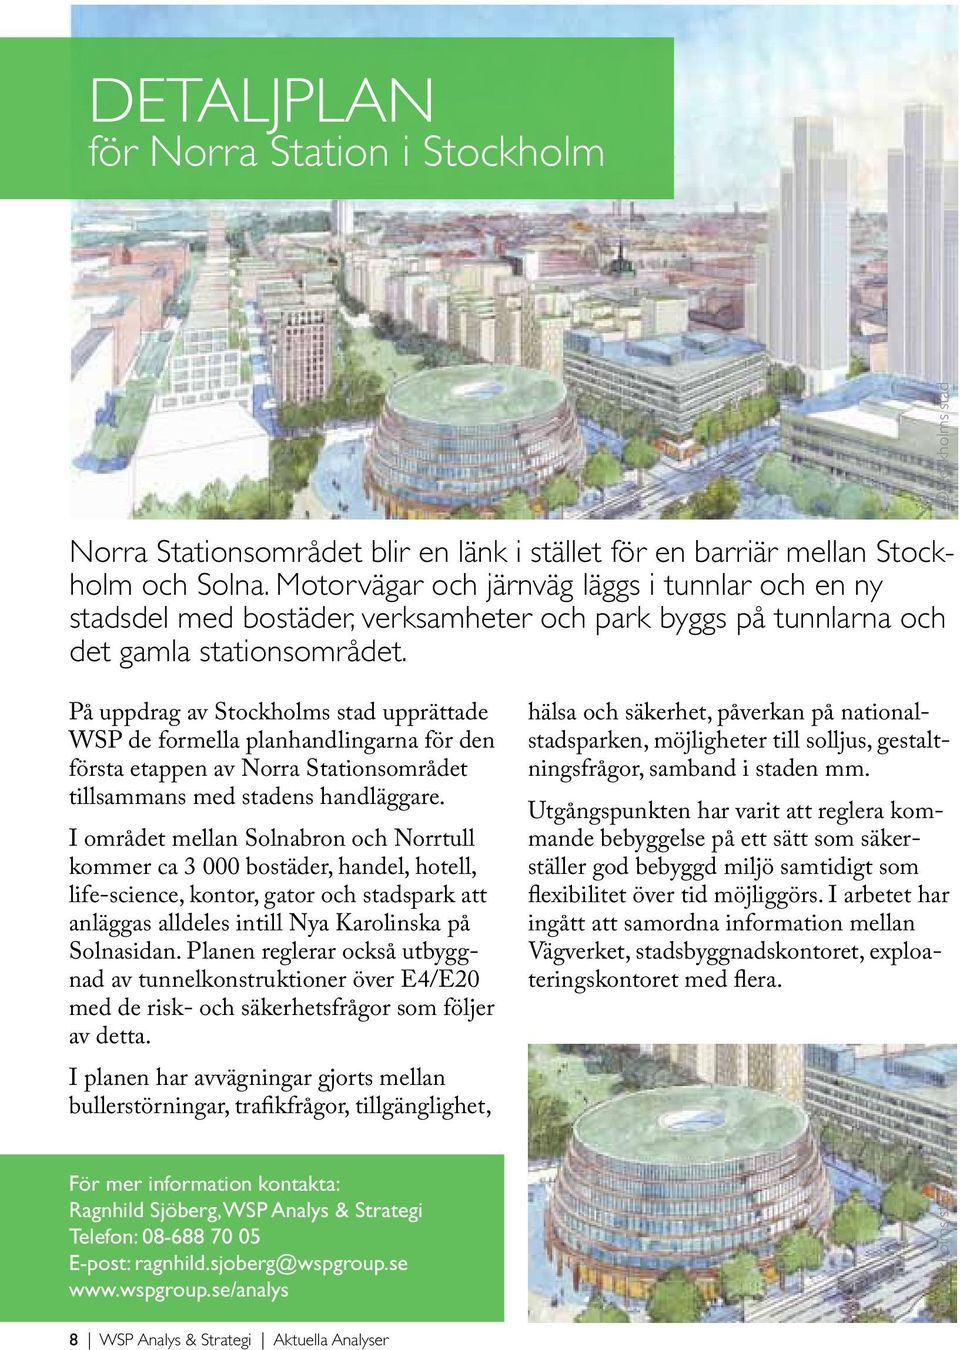 På uppdrag av Stockholms stad upprättade WSP de formella planhandlingarna för den första etappen av Norra Stationsområdet tillsammans med stadens handläggare.